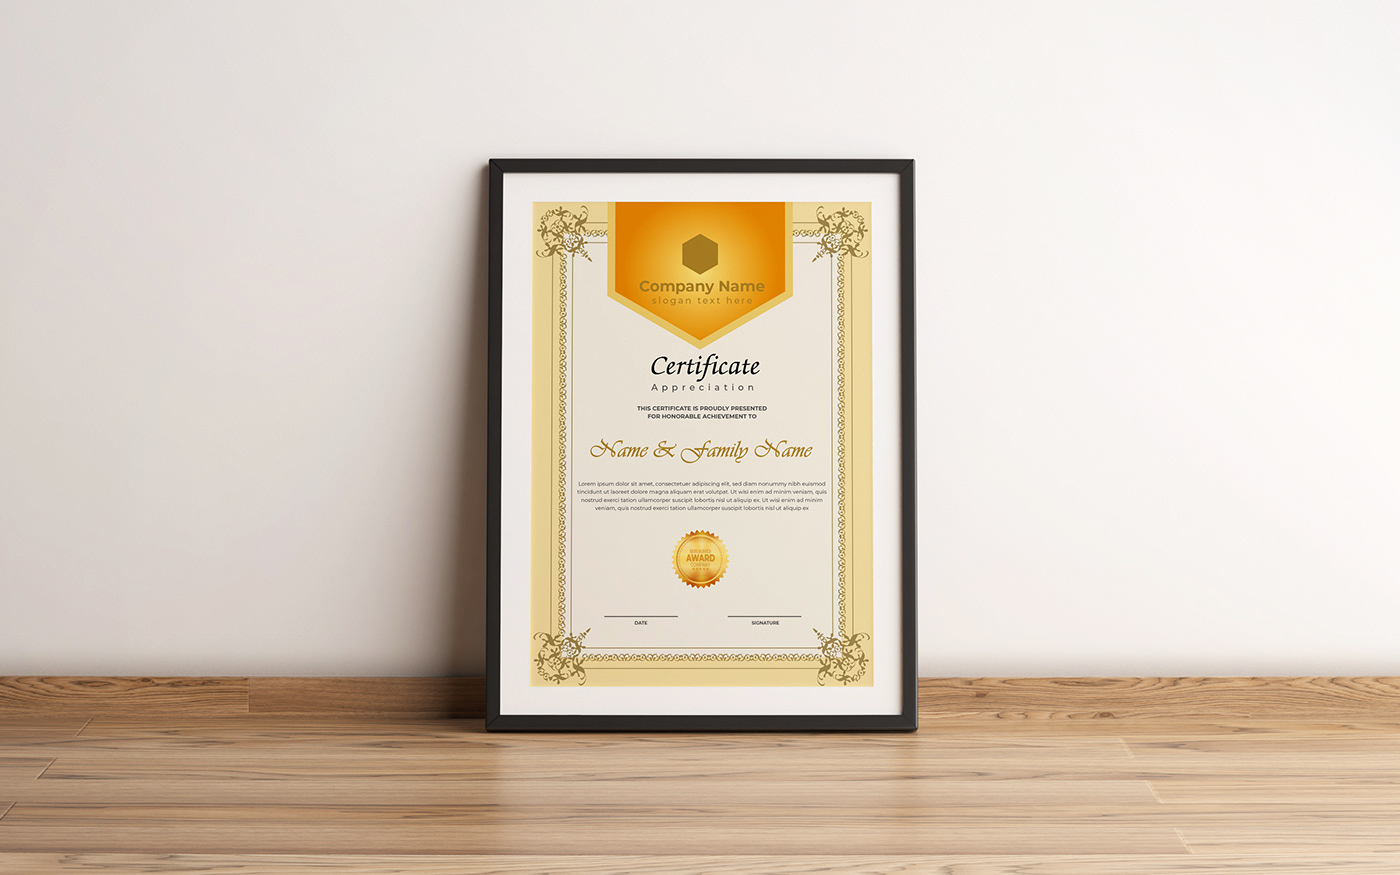 certificate Diploma Certificate diploma award Appreciation gift certificate certificate template gift cards award certificate custom certificate